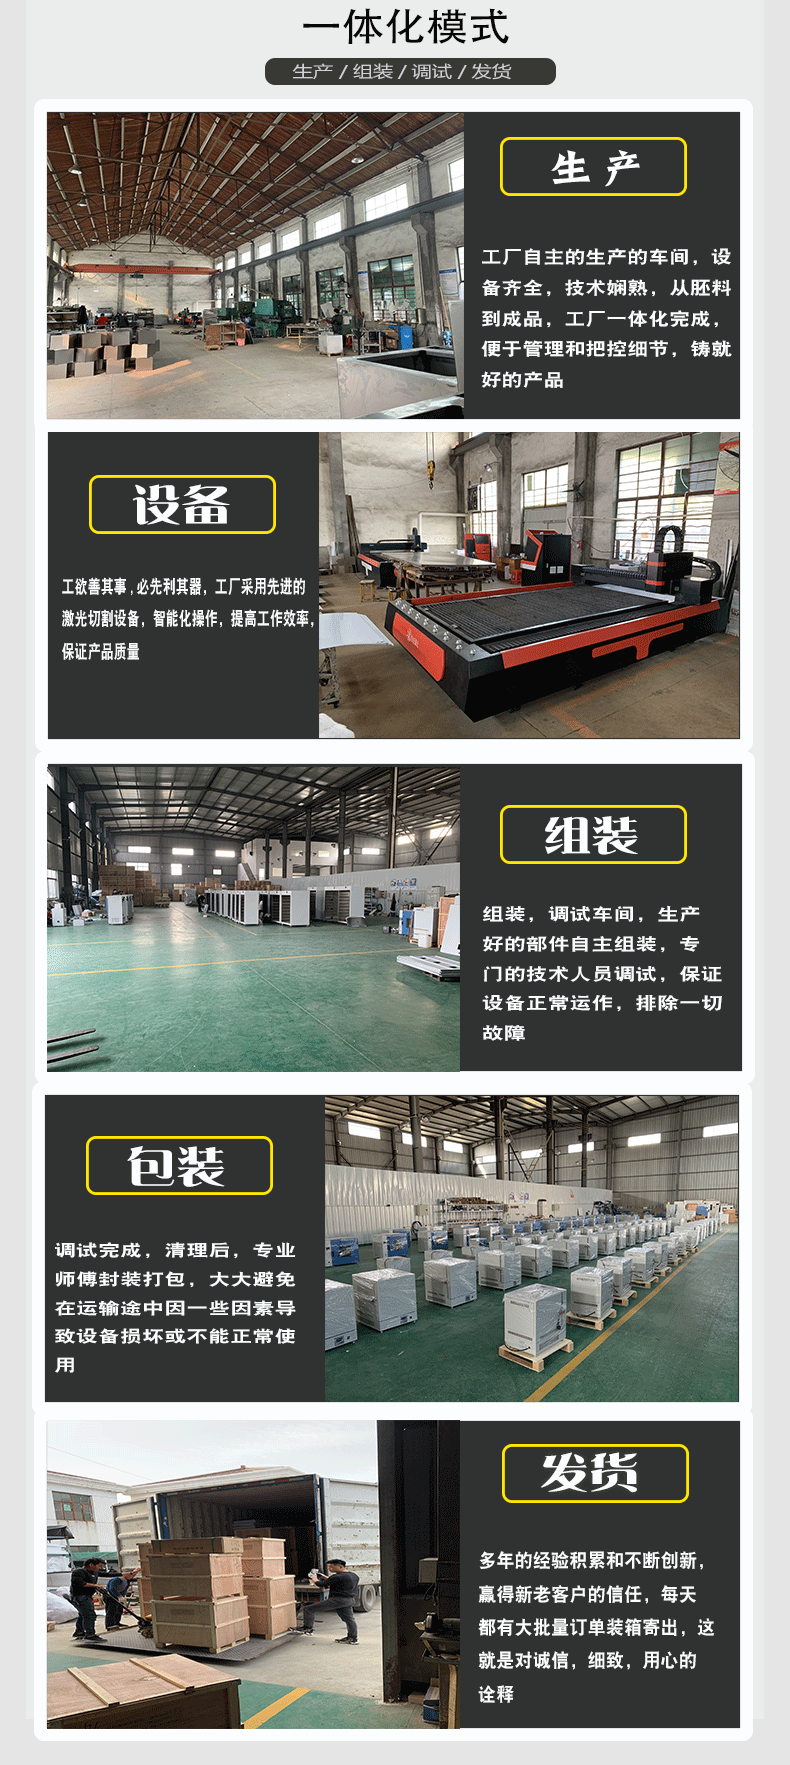 上海鳌珍厂家直销DHG-9013A鼓风干燥箱实验室大屏数显小型16L